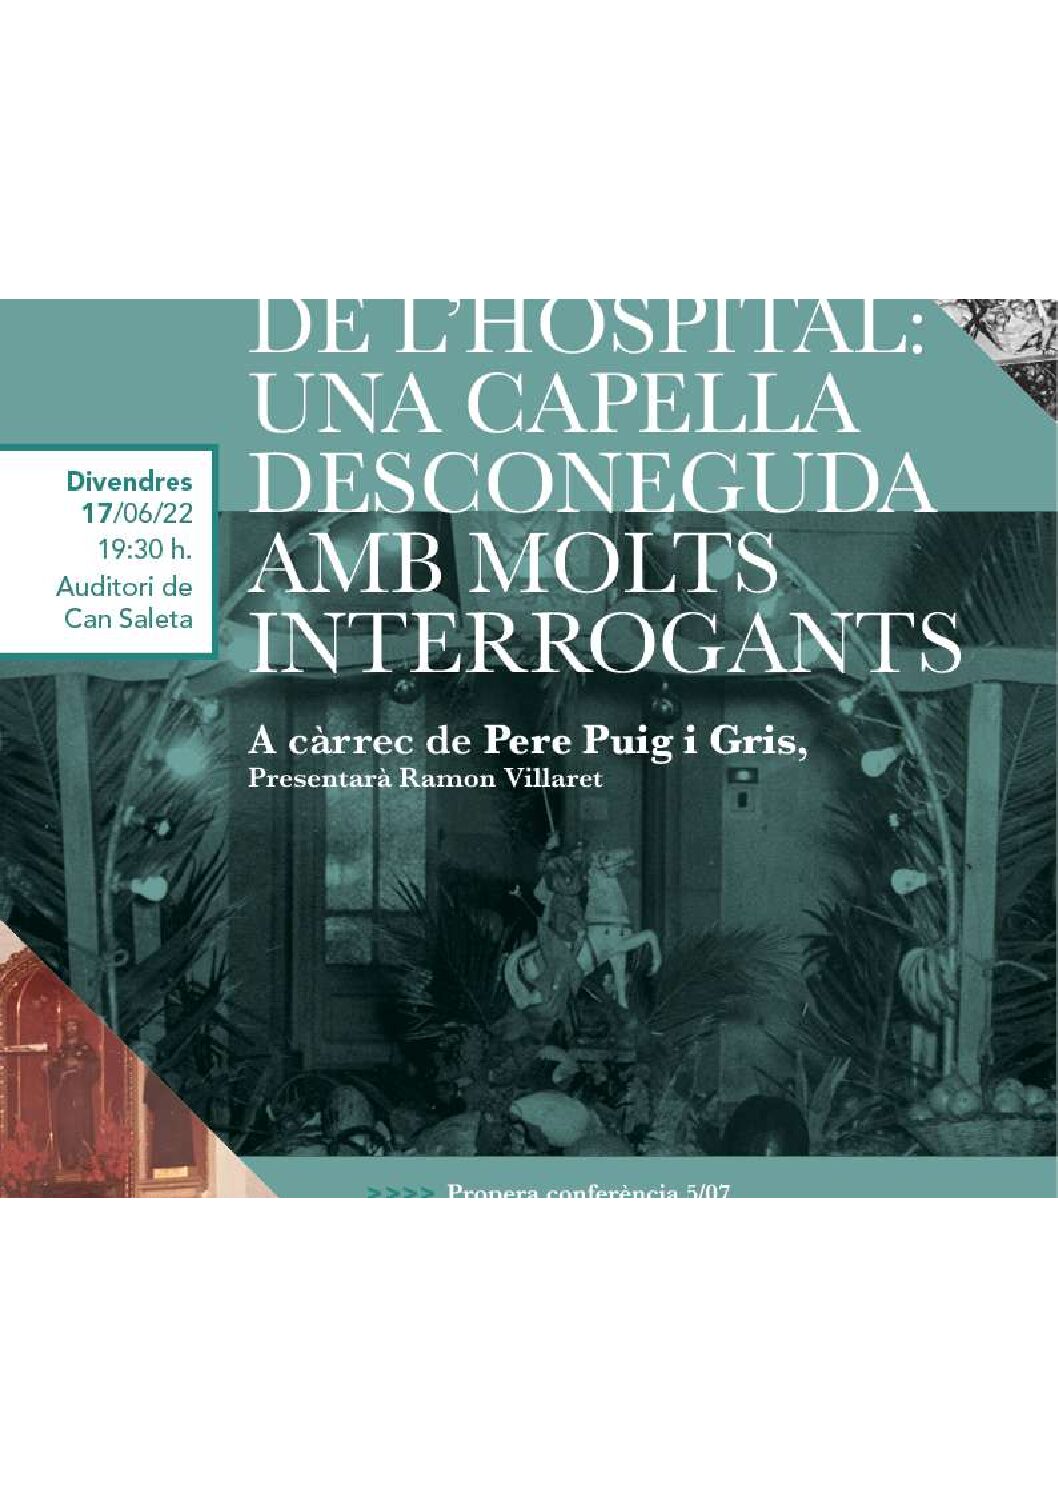 Nova conferència organitzada per l’AAPHC: “SANT JAUME DE L’HOSPITAL: UNA CAPELLA DESCONEGUDA AMB MOLTS INTERROGANTS”, a càrrec de Pere Puig i Gris